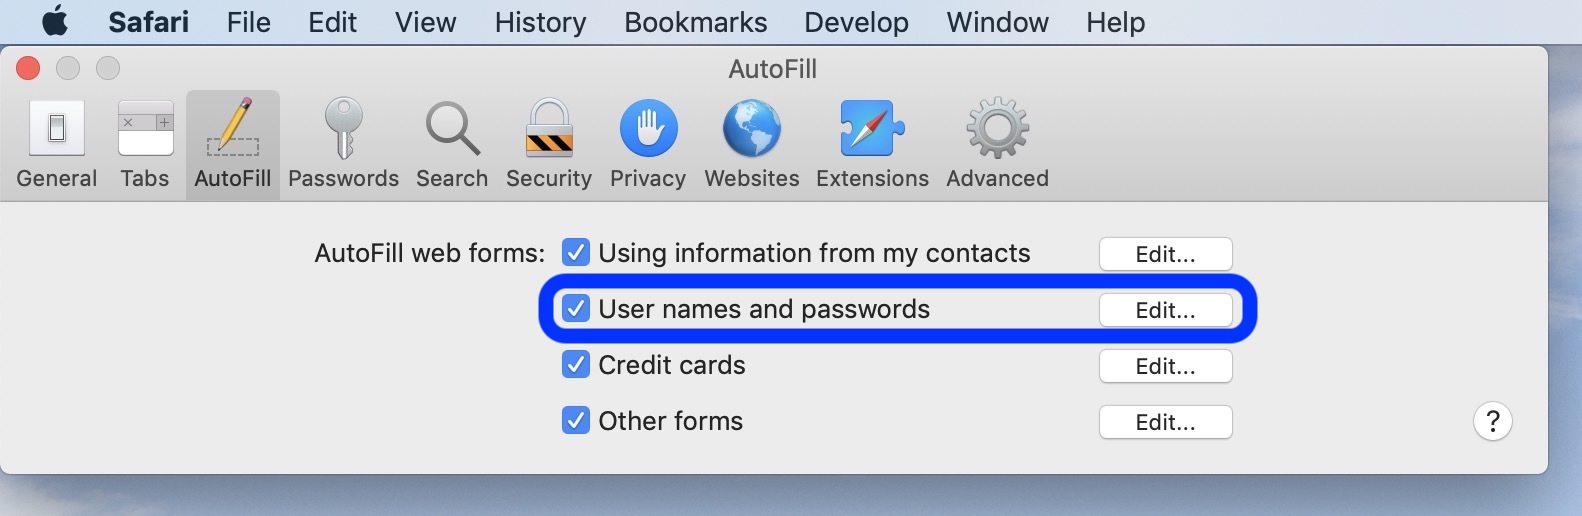 safari autofill password mac